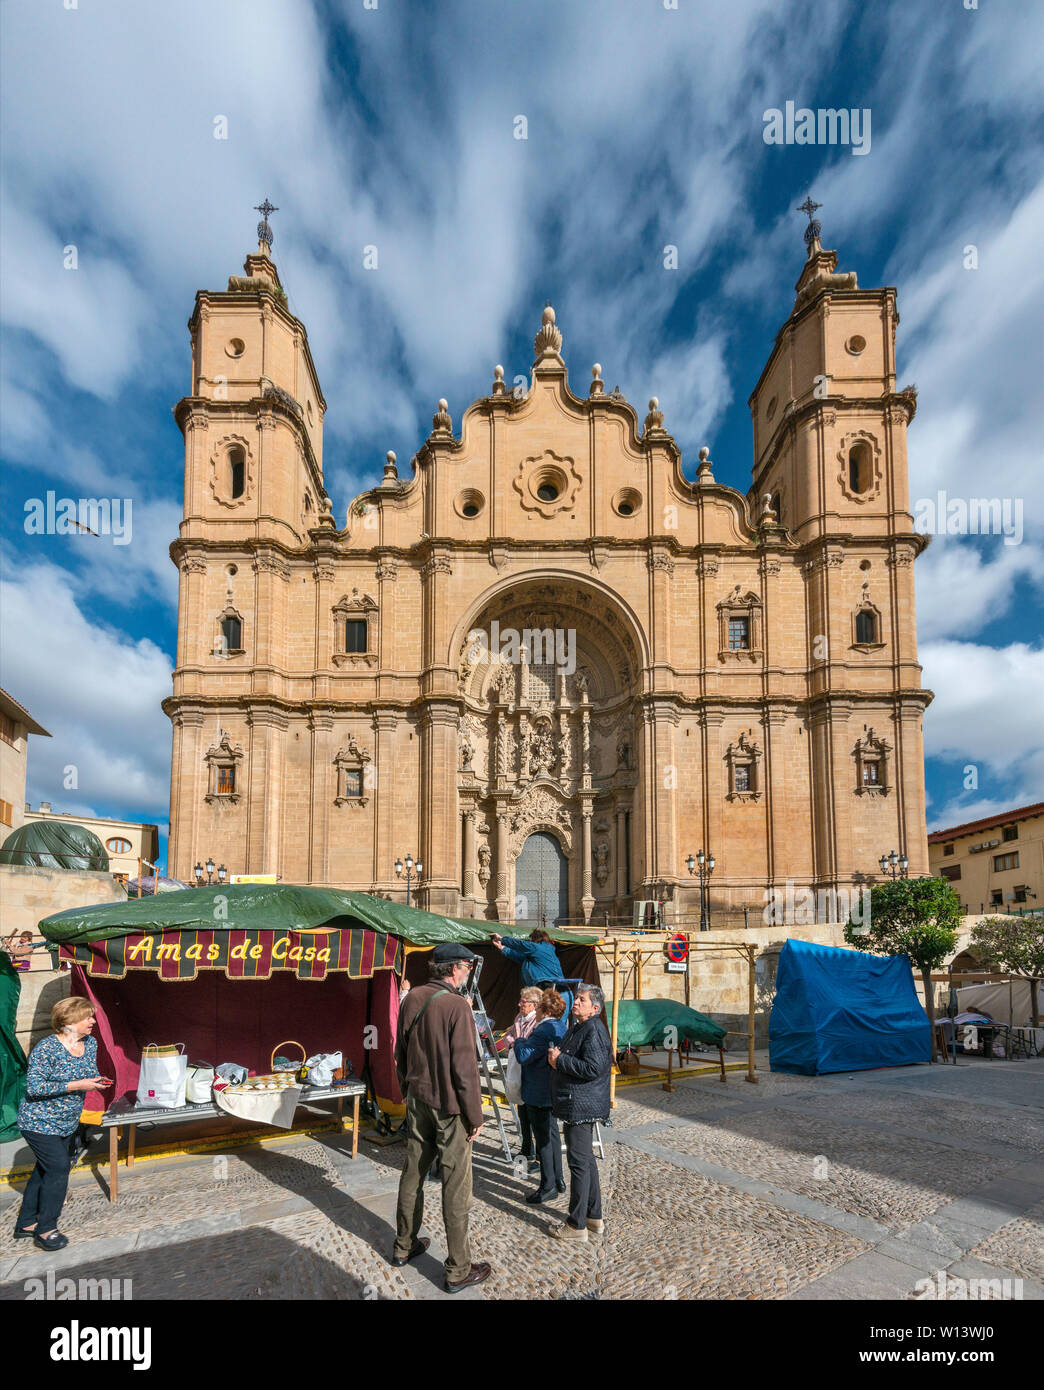 Feria de la calle, en la Iglesia de Santa María la Mayor, la Plaza de España de Alcañiz, provincia de Teruel, Aragón, España Foto de stock